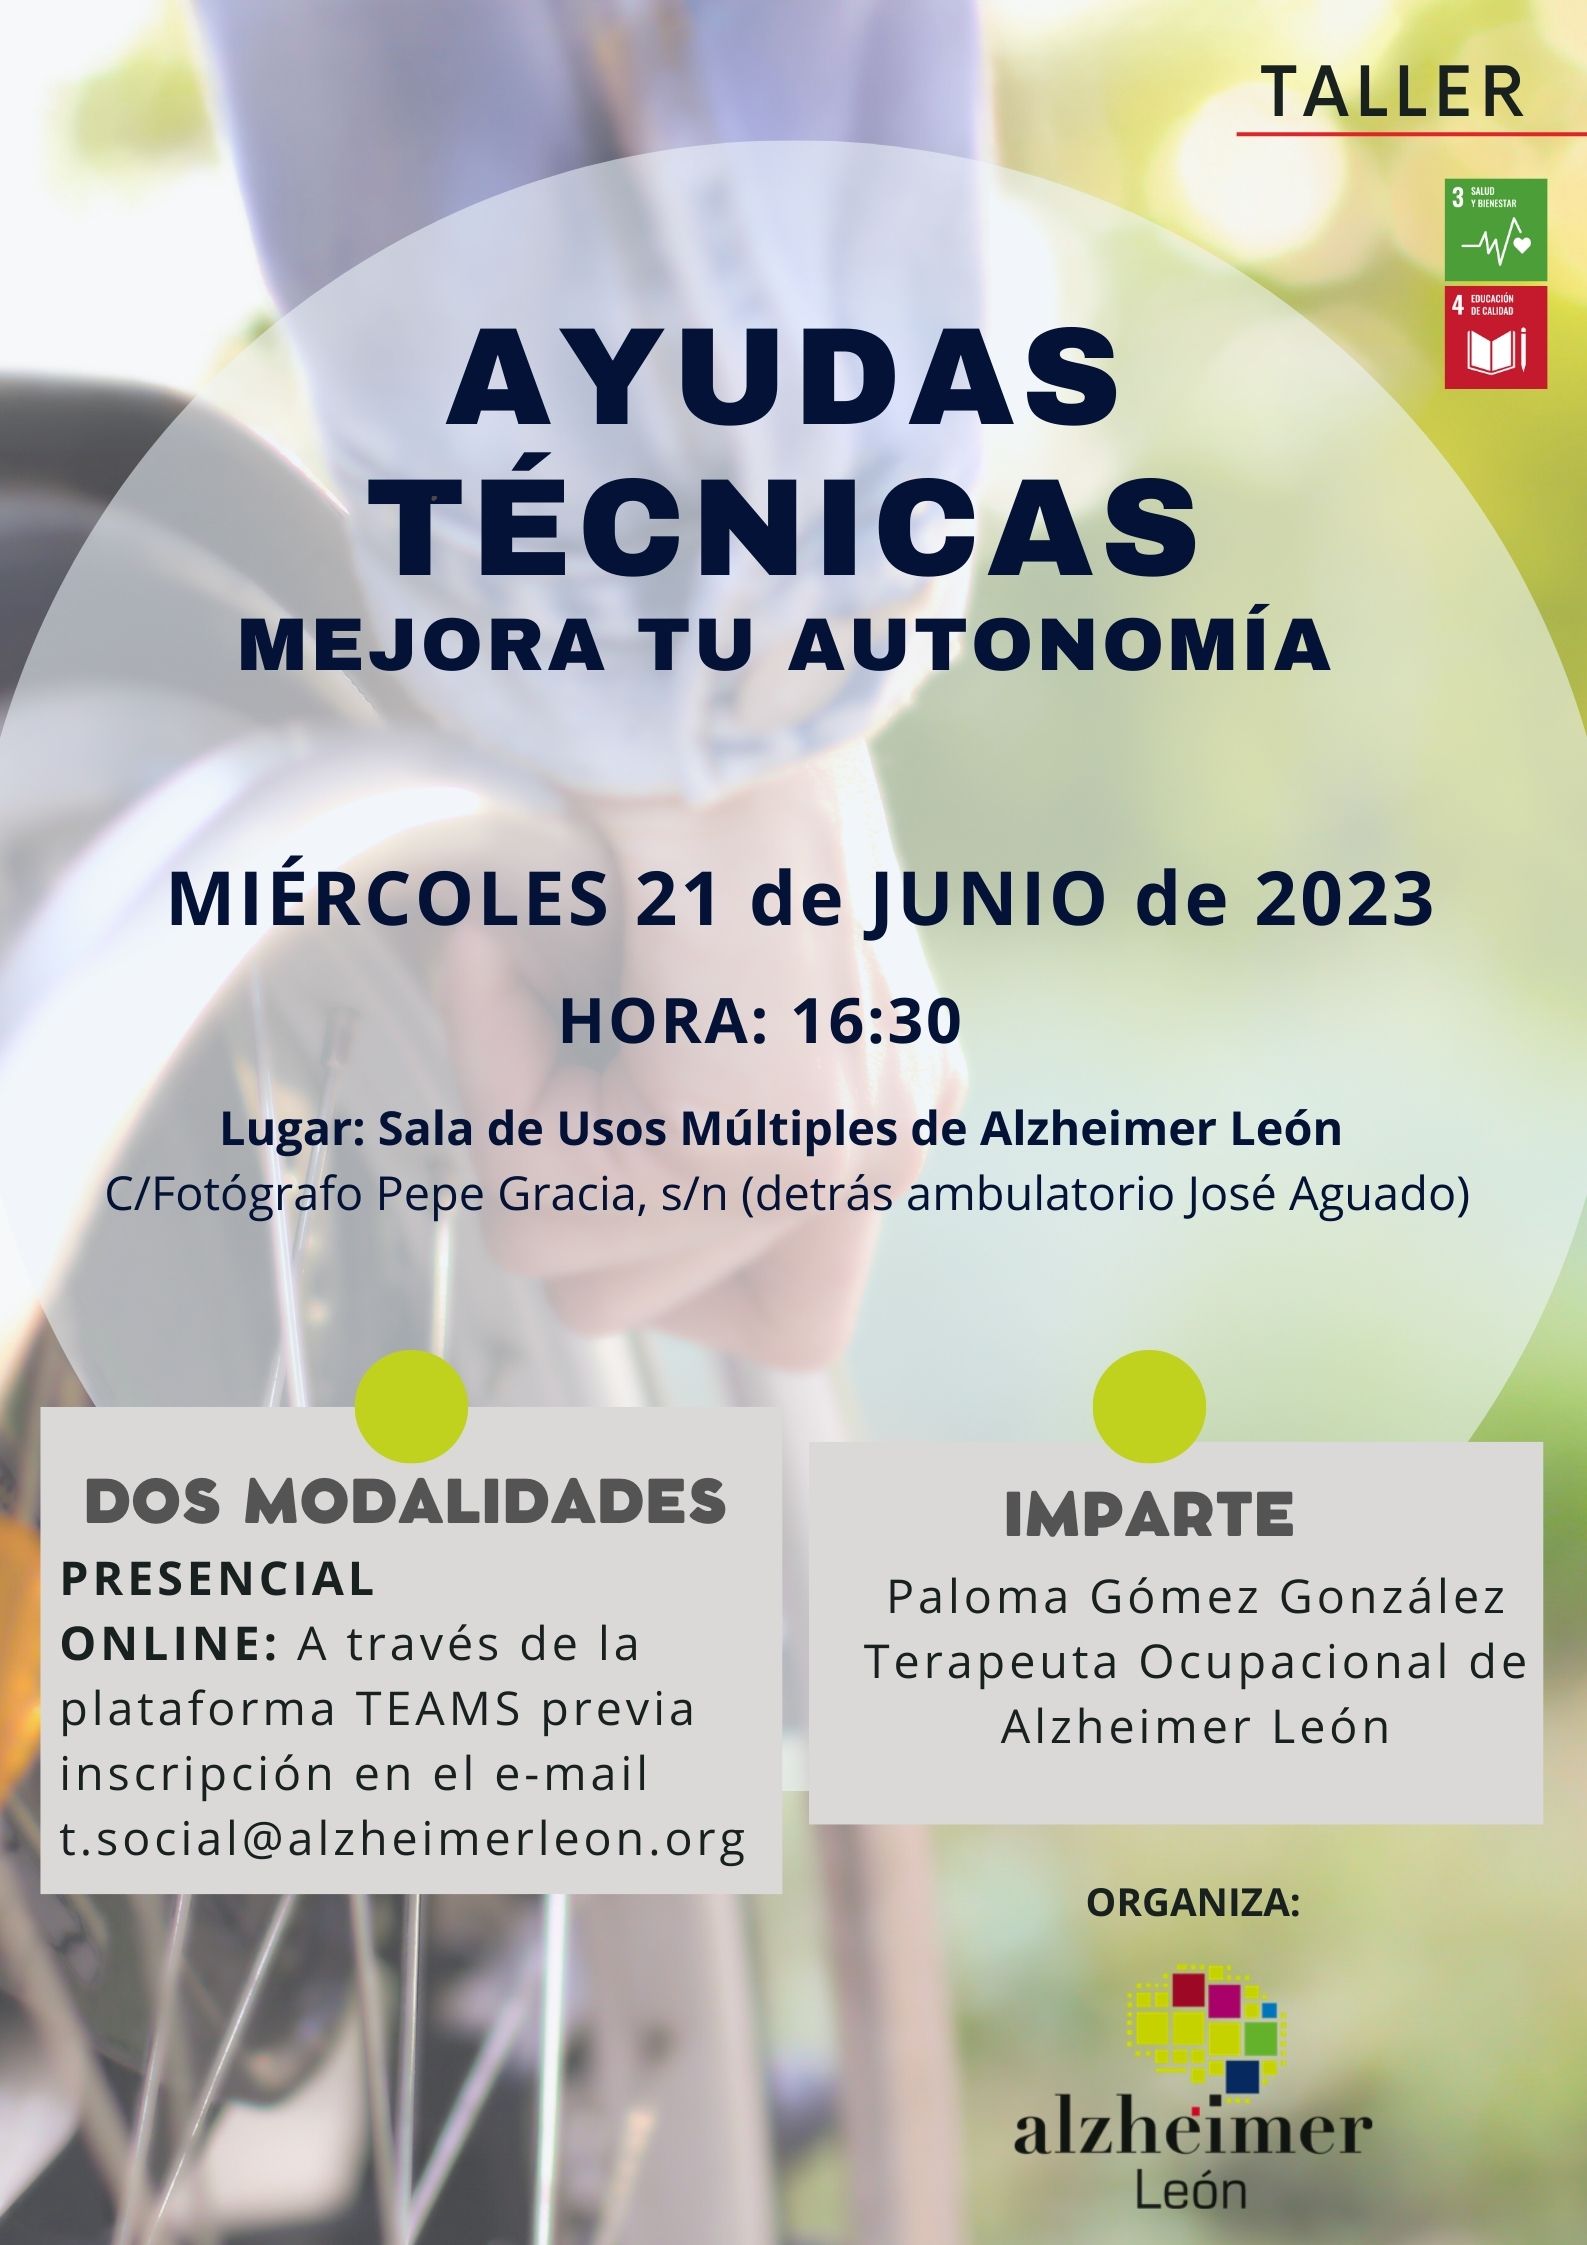 información sobre ayudas técnicas en Alzheimer León